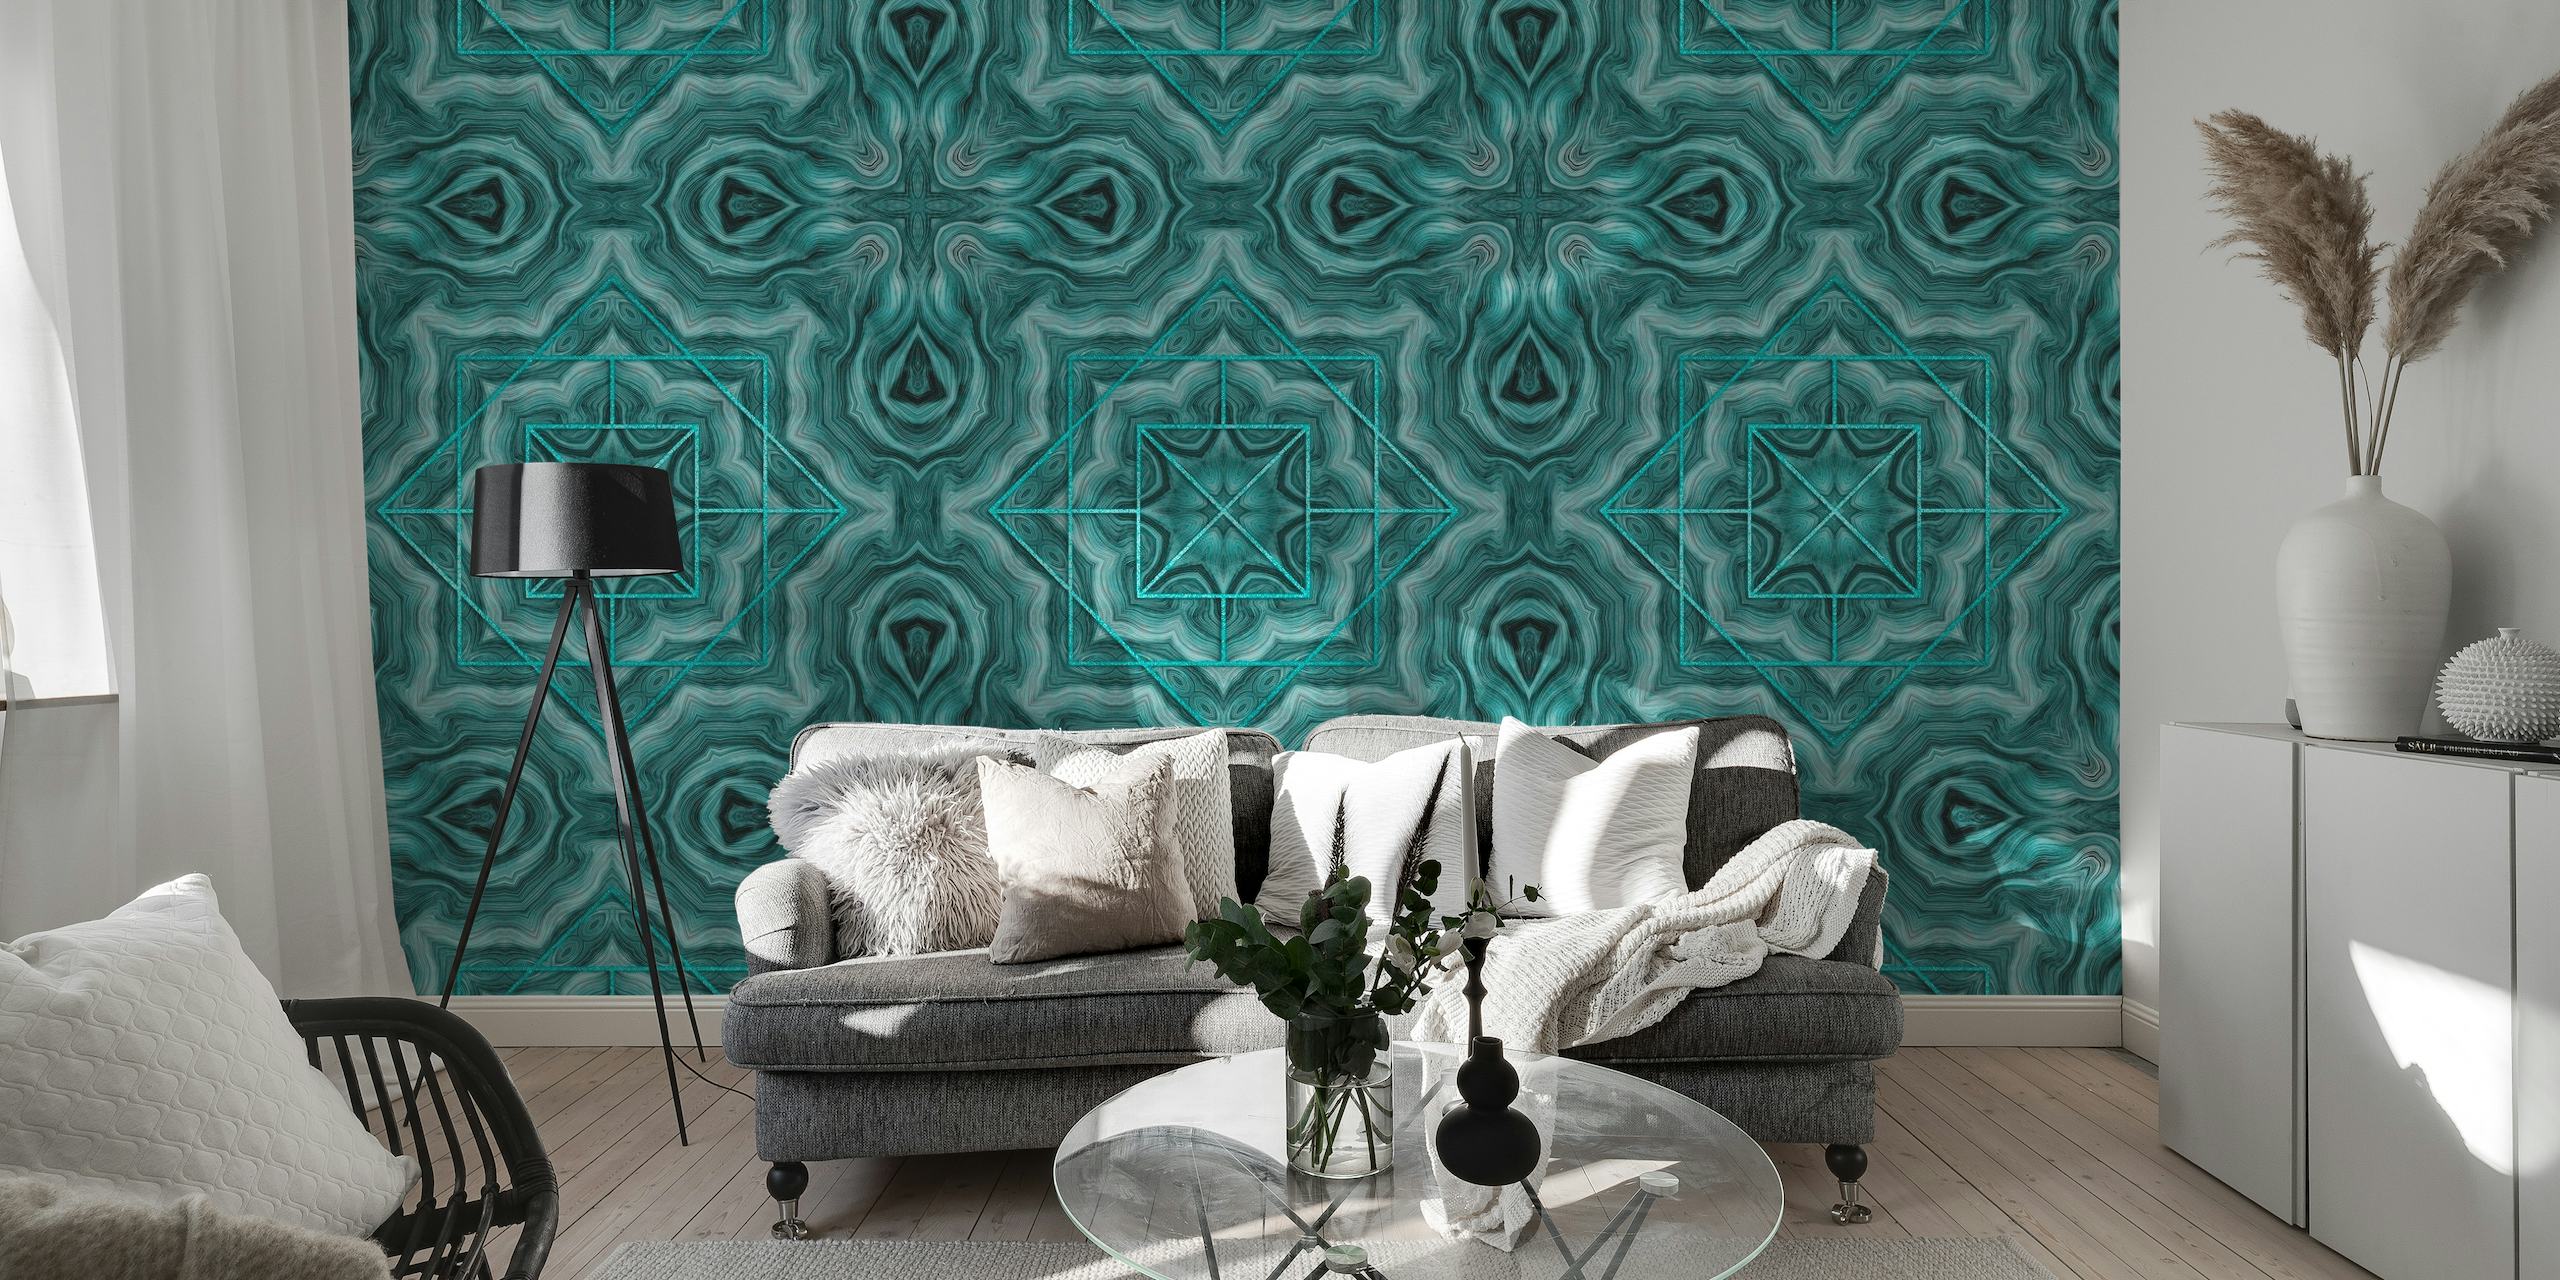 Art Deco Inspired Marble Tiles wallpaper